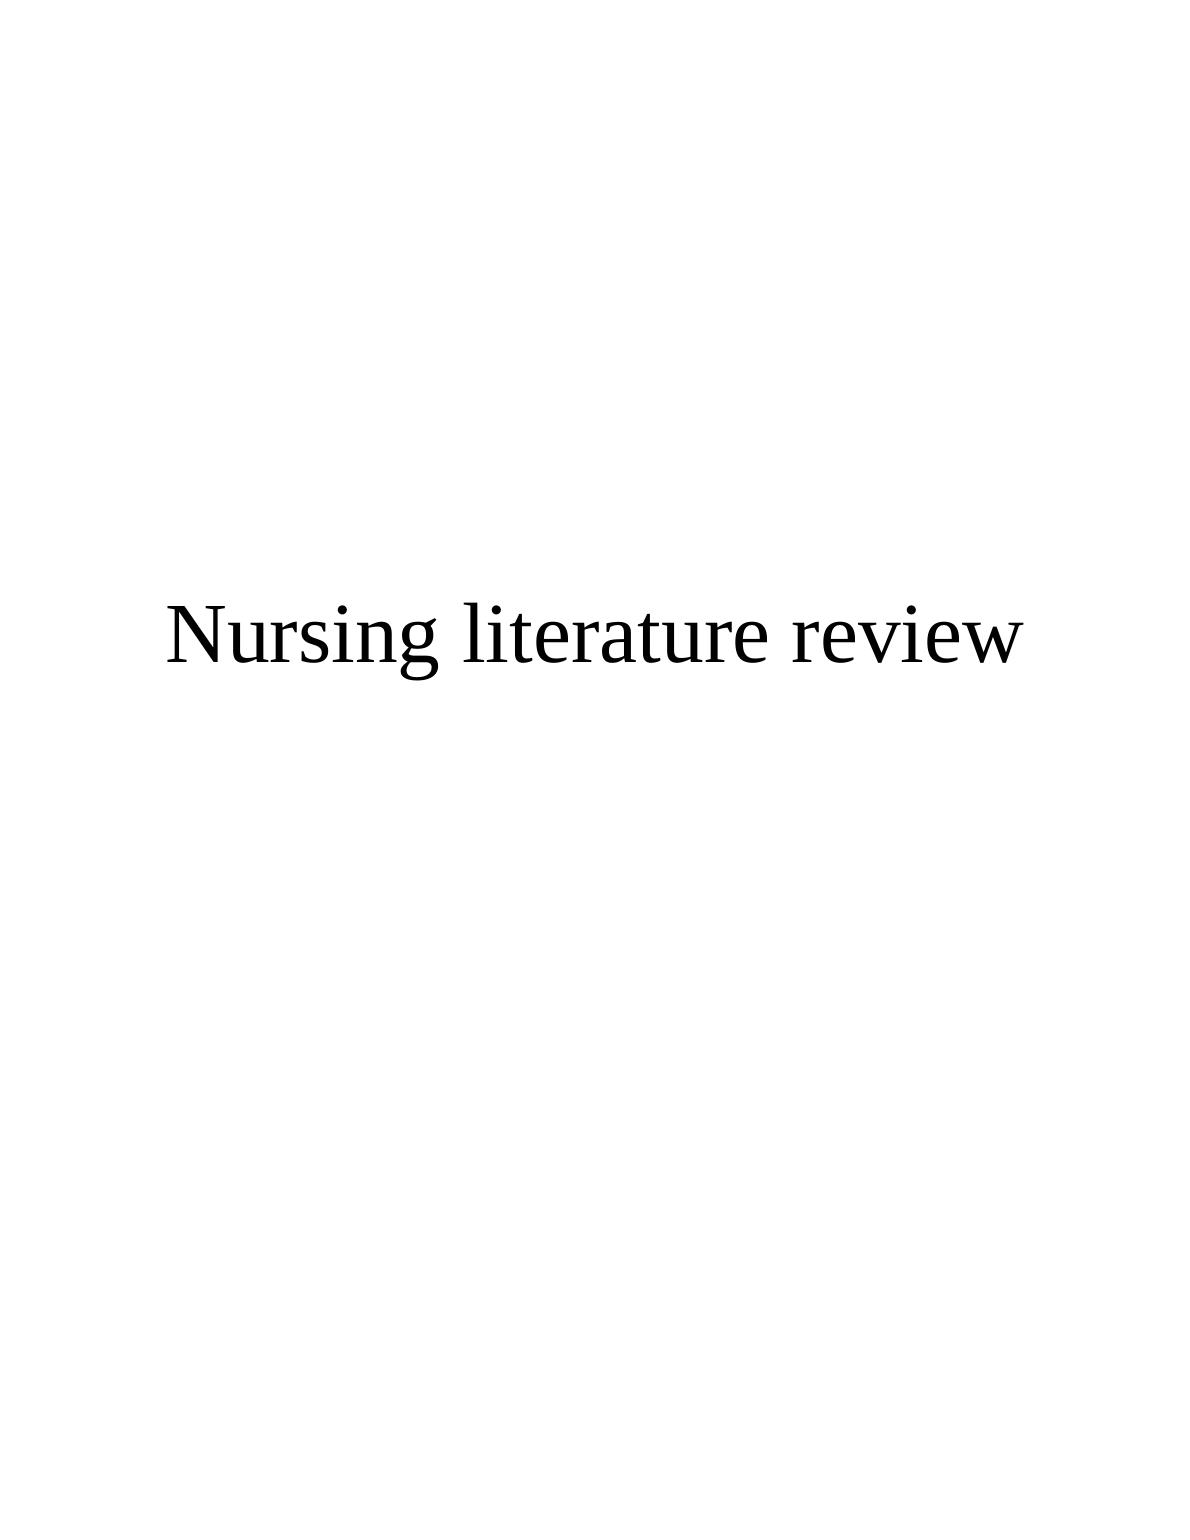 nursing literature review question ideas